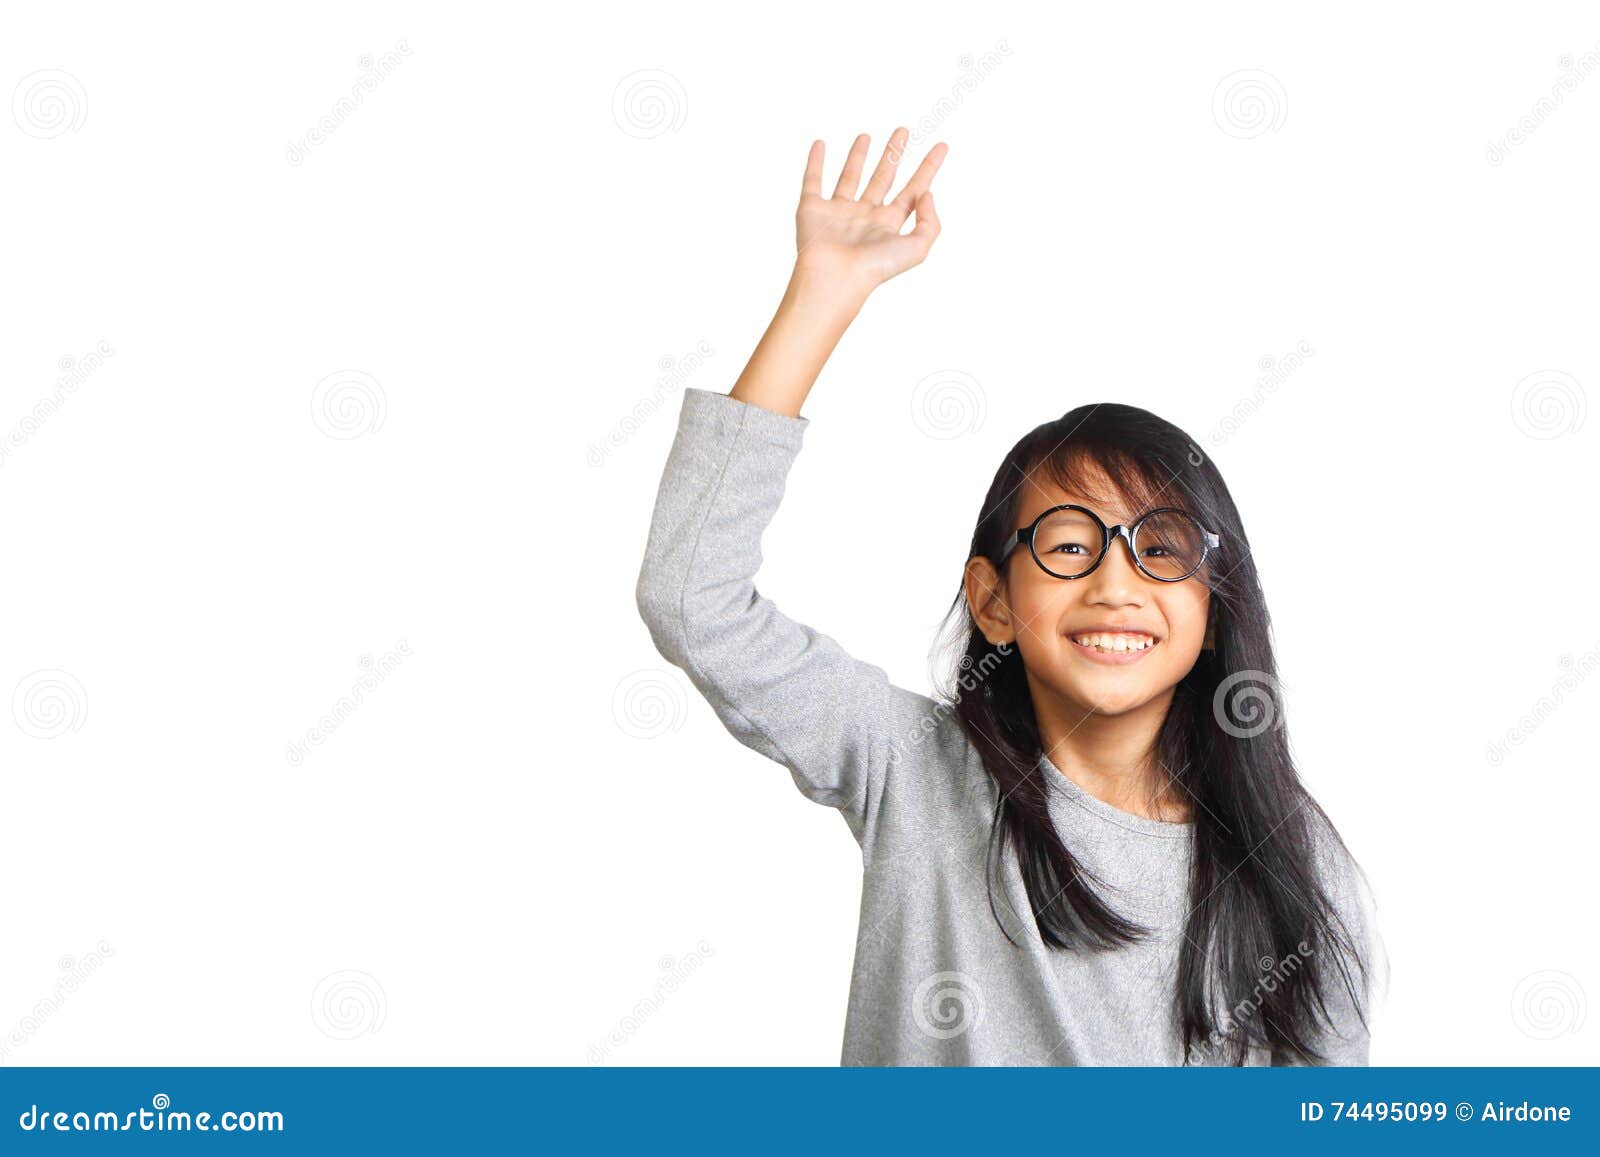 little girl raise her hand up